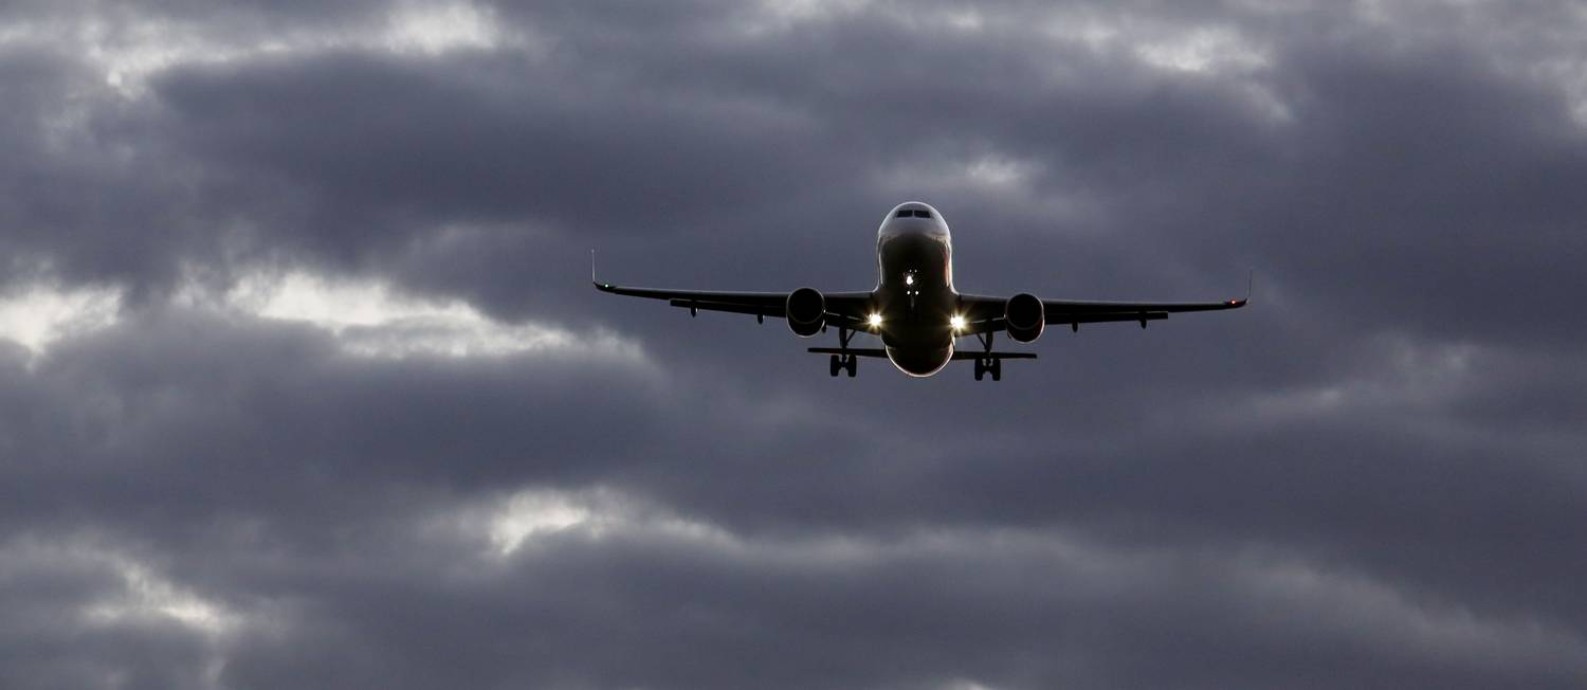 Reestabelecimento de voos pré-pandemia está sob risco pela alta de custos no setor de aviação, que sobem principalmente com a alta do dólar Foto: Michel Filho / Agência O Globo